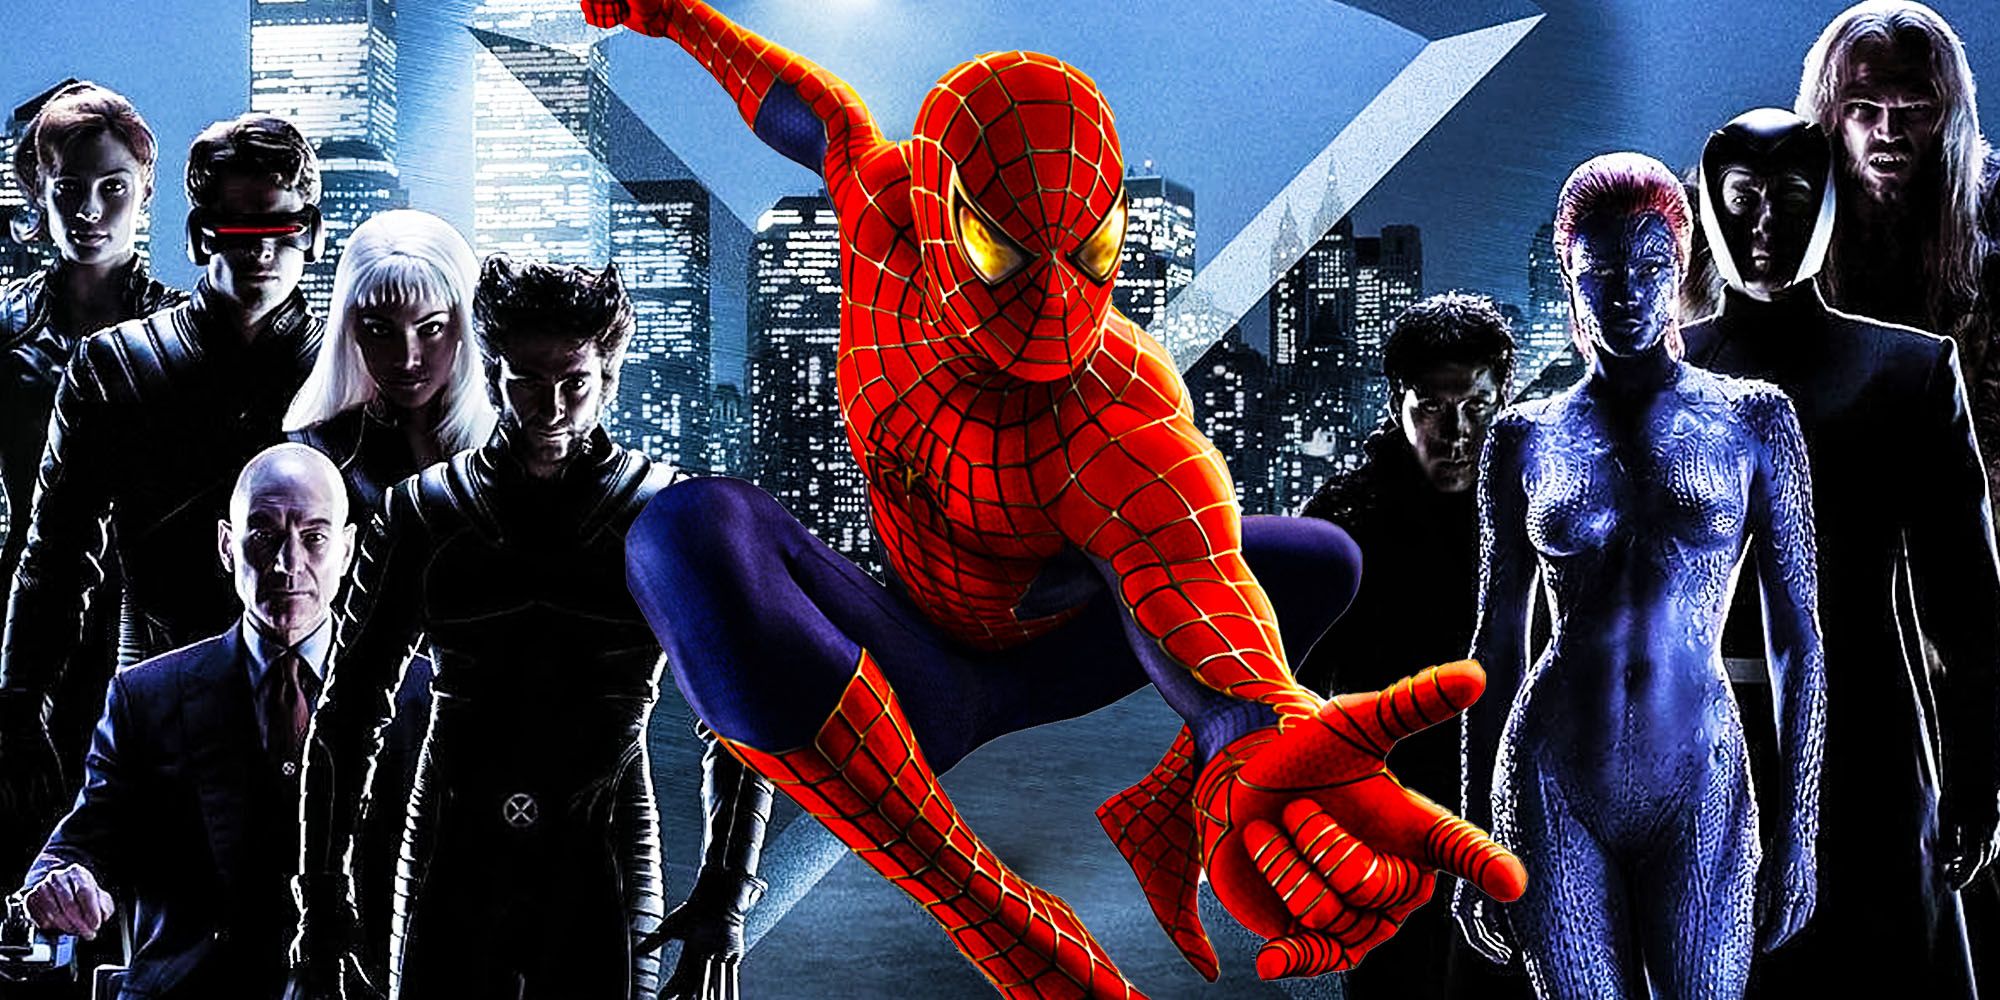 Mira el cameo sorpresa de Spider-Man en la escena del blooper de X-Men